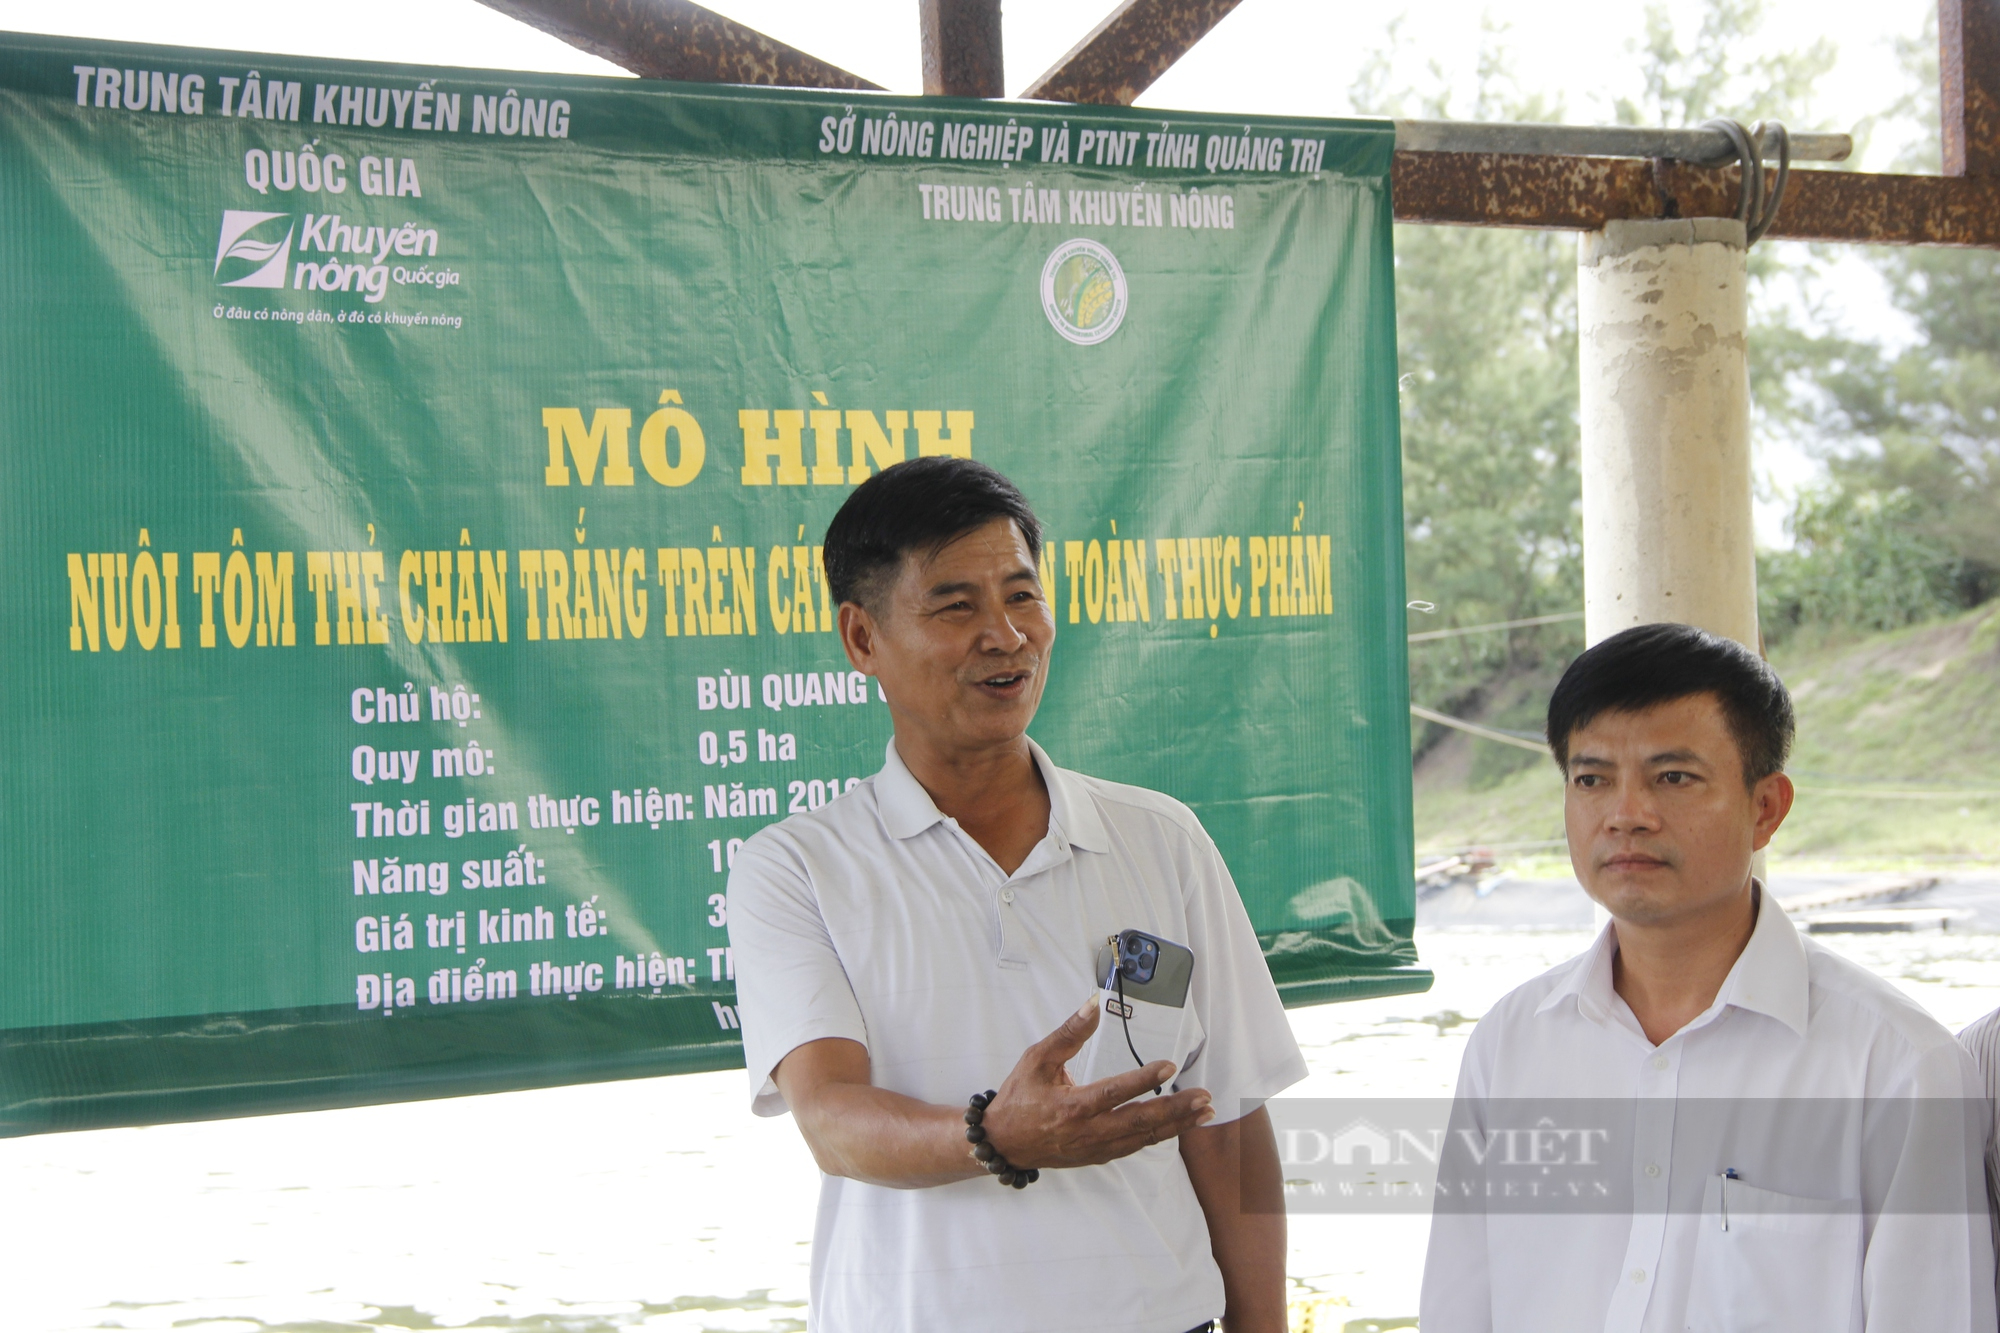 Ông nông dân ở Quảng Trị bỏ túi hơn 2 tỷ đồng mỗi năm nhờ nuôi tôm 2 giai đoạn an toàn sinh học - Ảnh 1.